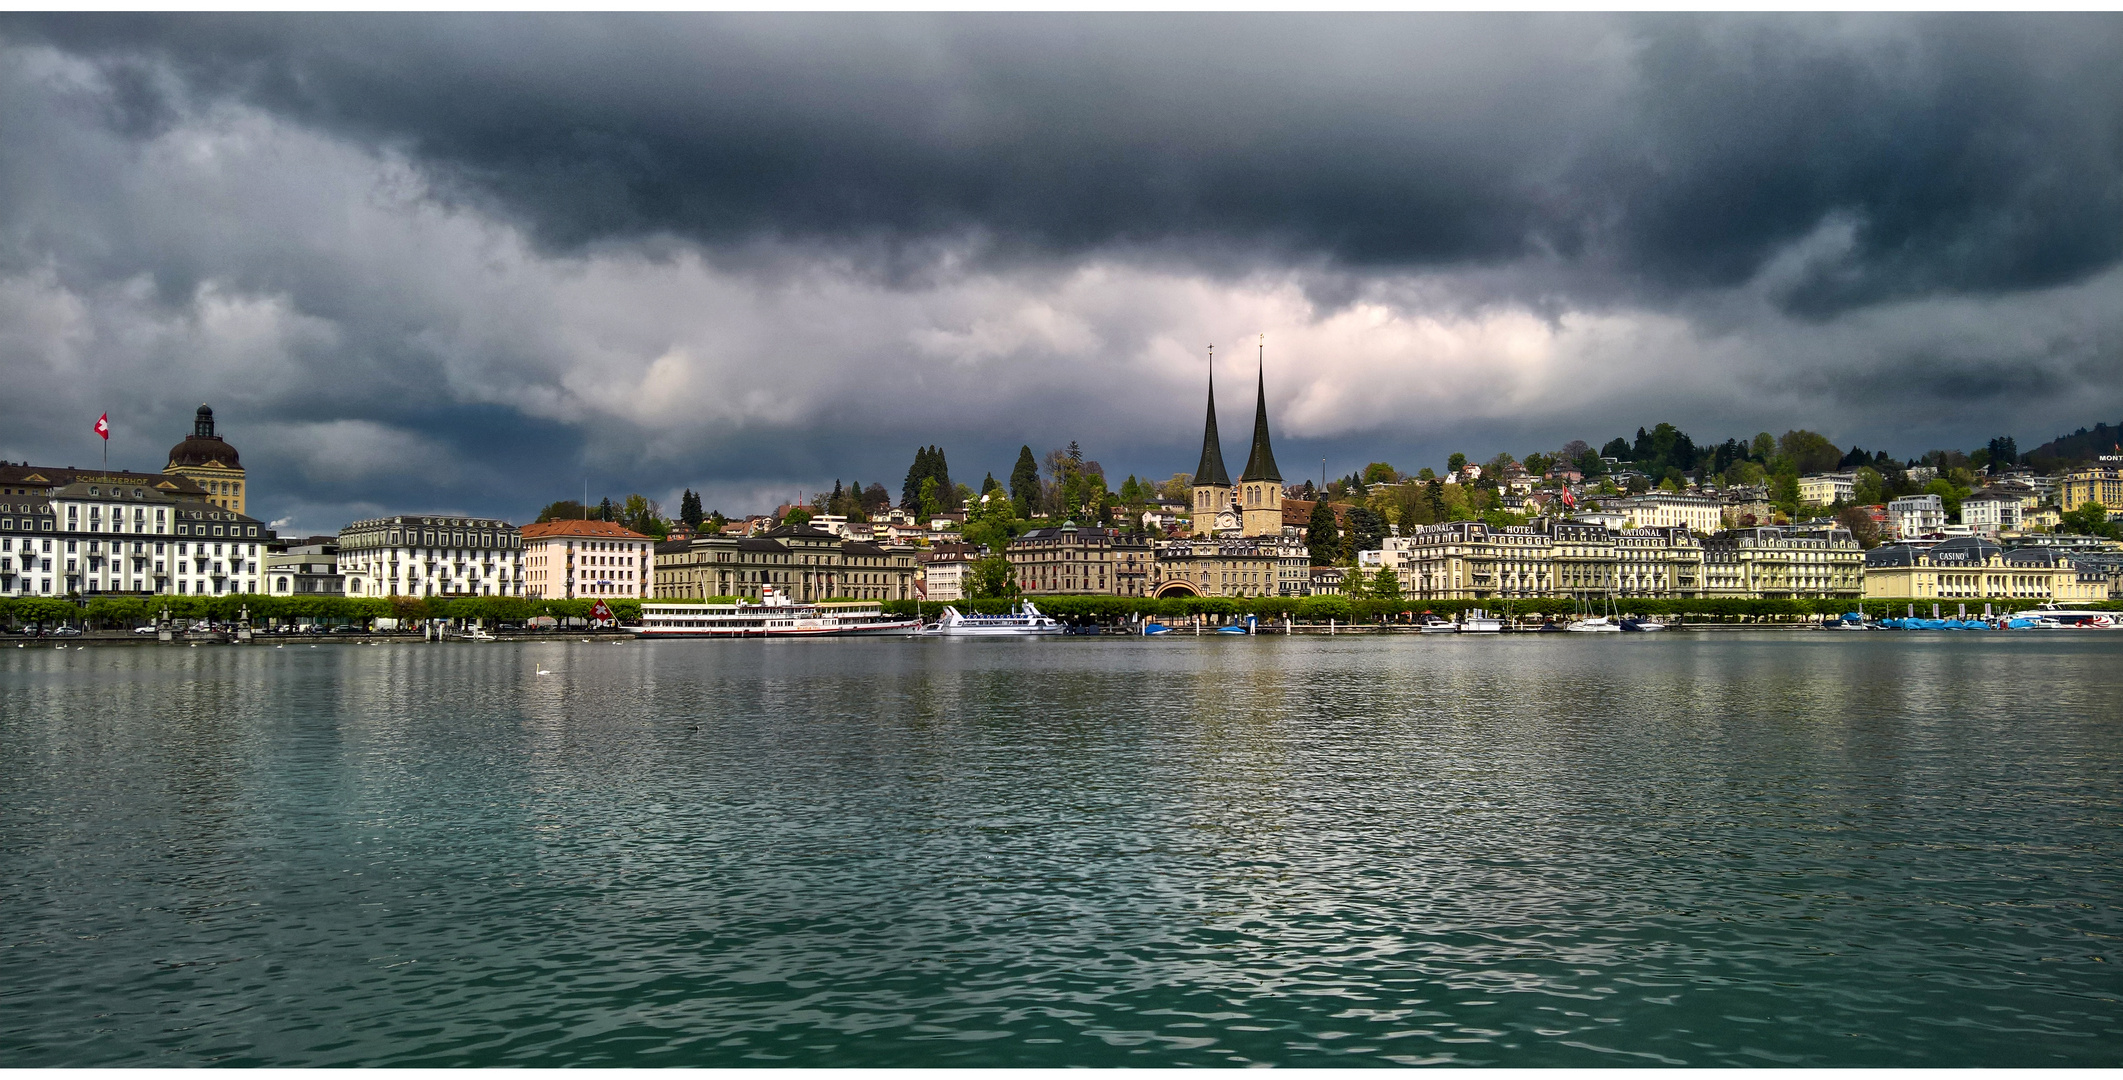 Bedrohliche Gewitterstimmung über Luzern